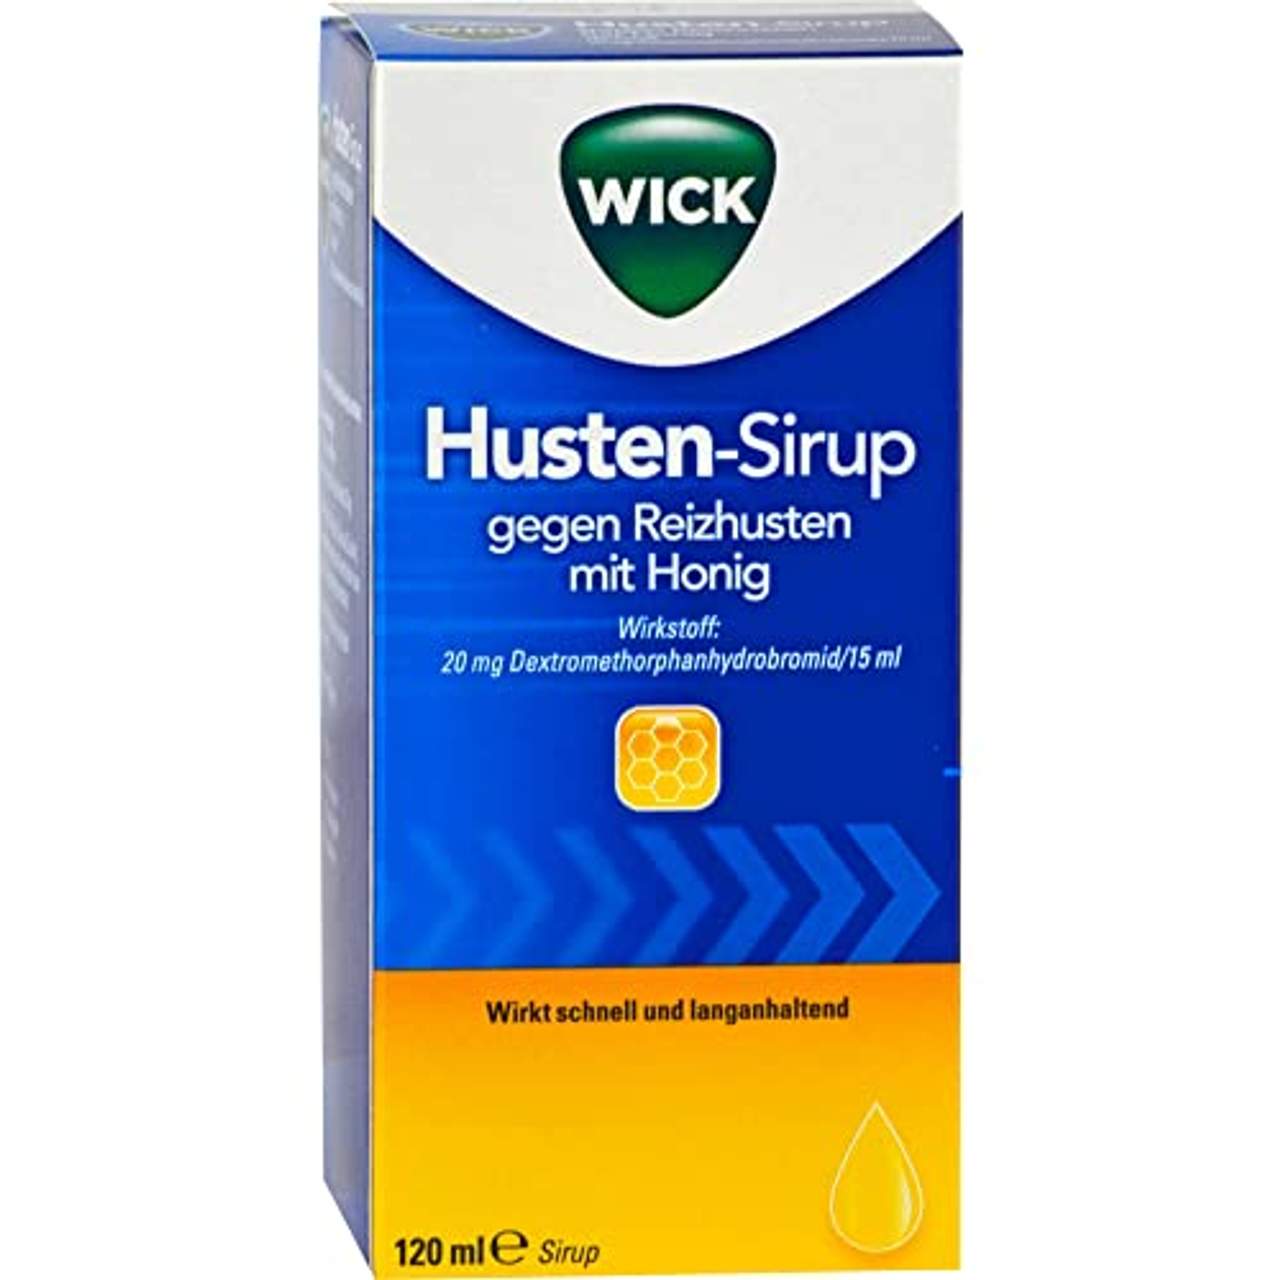 Wick Husten-Sirup gegen Reizhusten